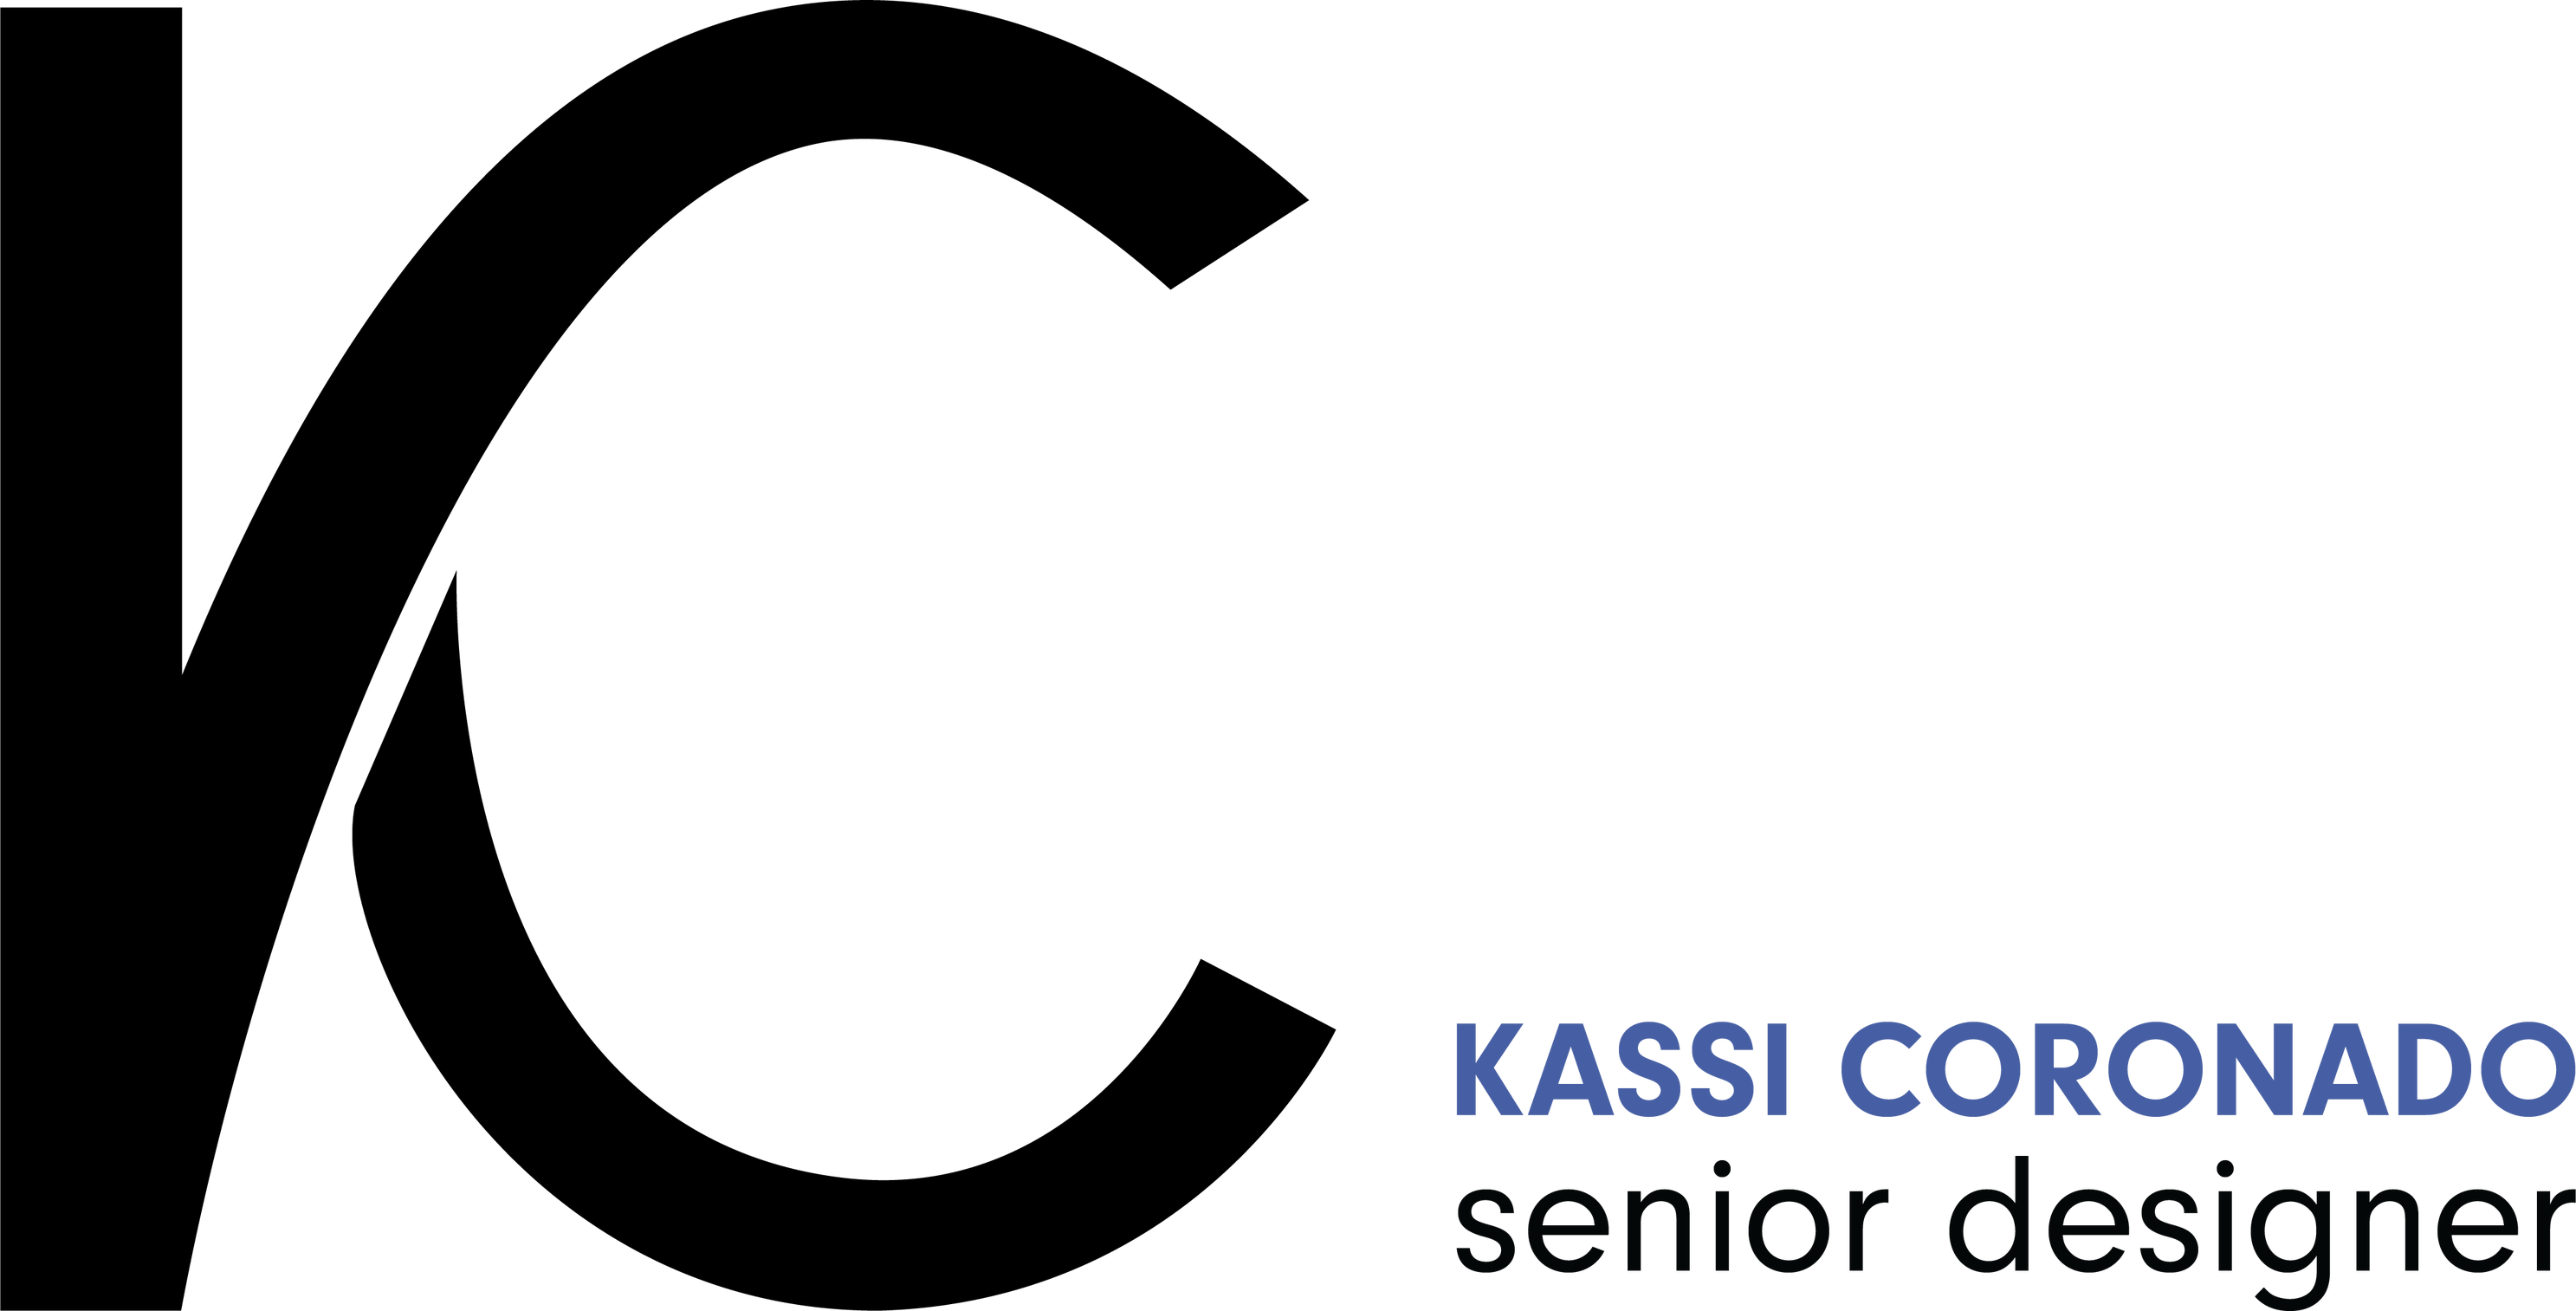 Kassi Coronado's Portfolio